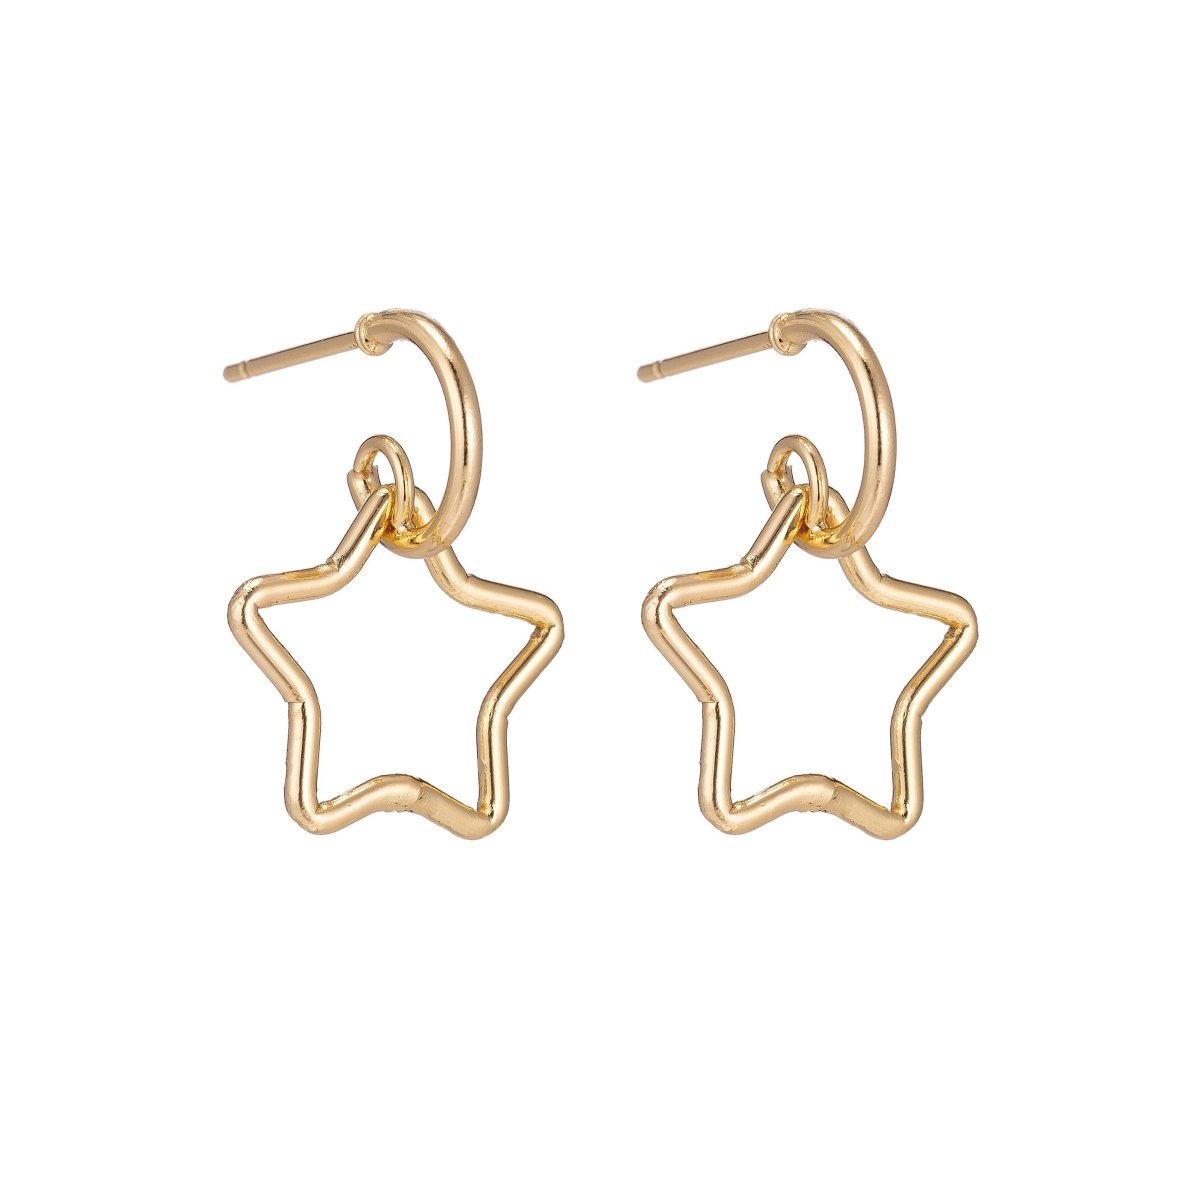 Dainty 18k Gold Filled Star Earrings, Celestial Earrings, Geometric Huggie Earring Making Supply Findings for Jewelry Making Supplies K-027 - DLUXCA